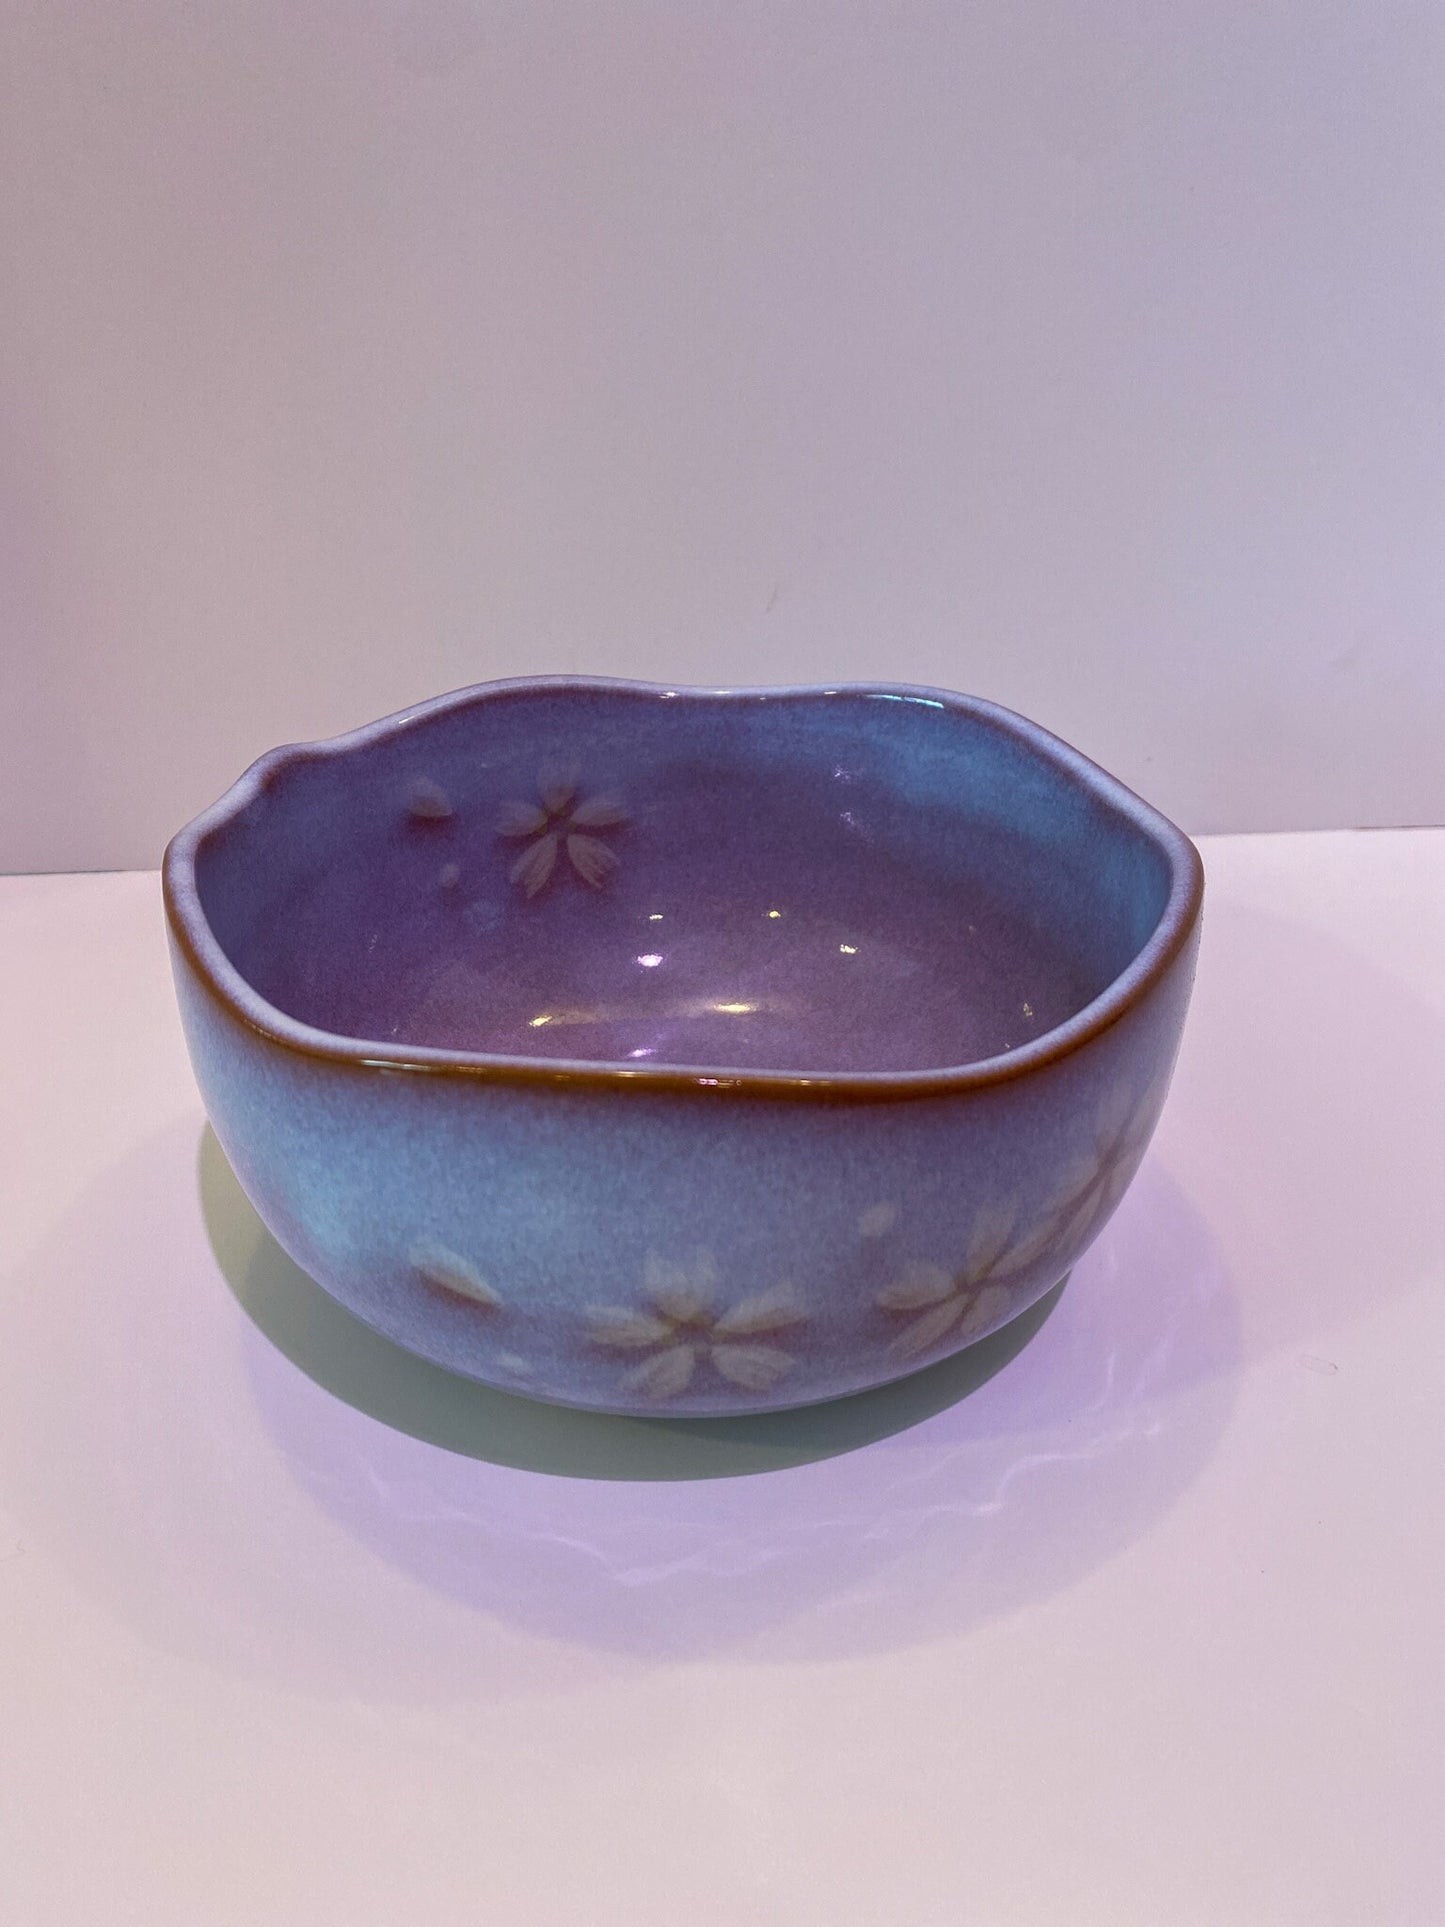 萩焼 椿秀窯　Japanese Ceramic Saucer, Hagi Yaki Ware, Chinshu-gama , Size 6.5 inch diameter x 3.25" height, comes with original box